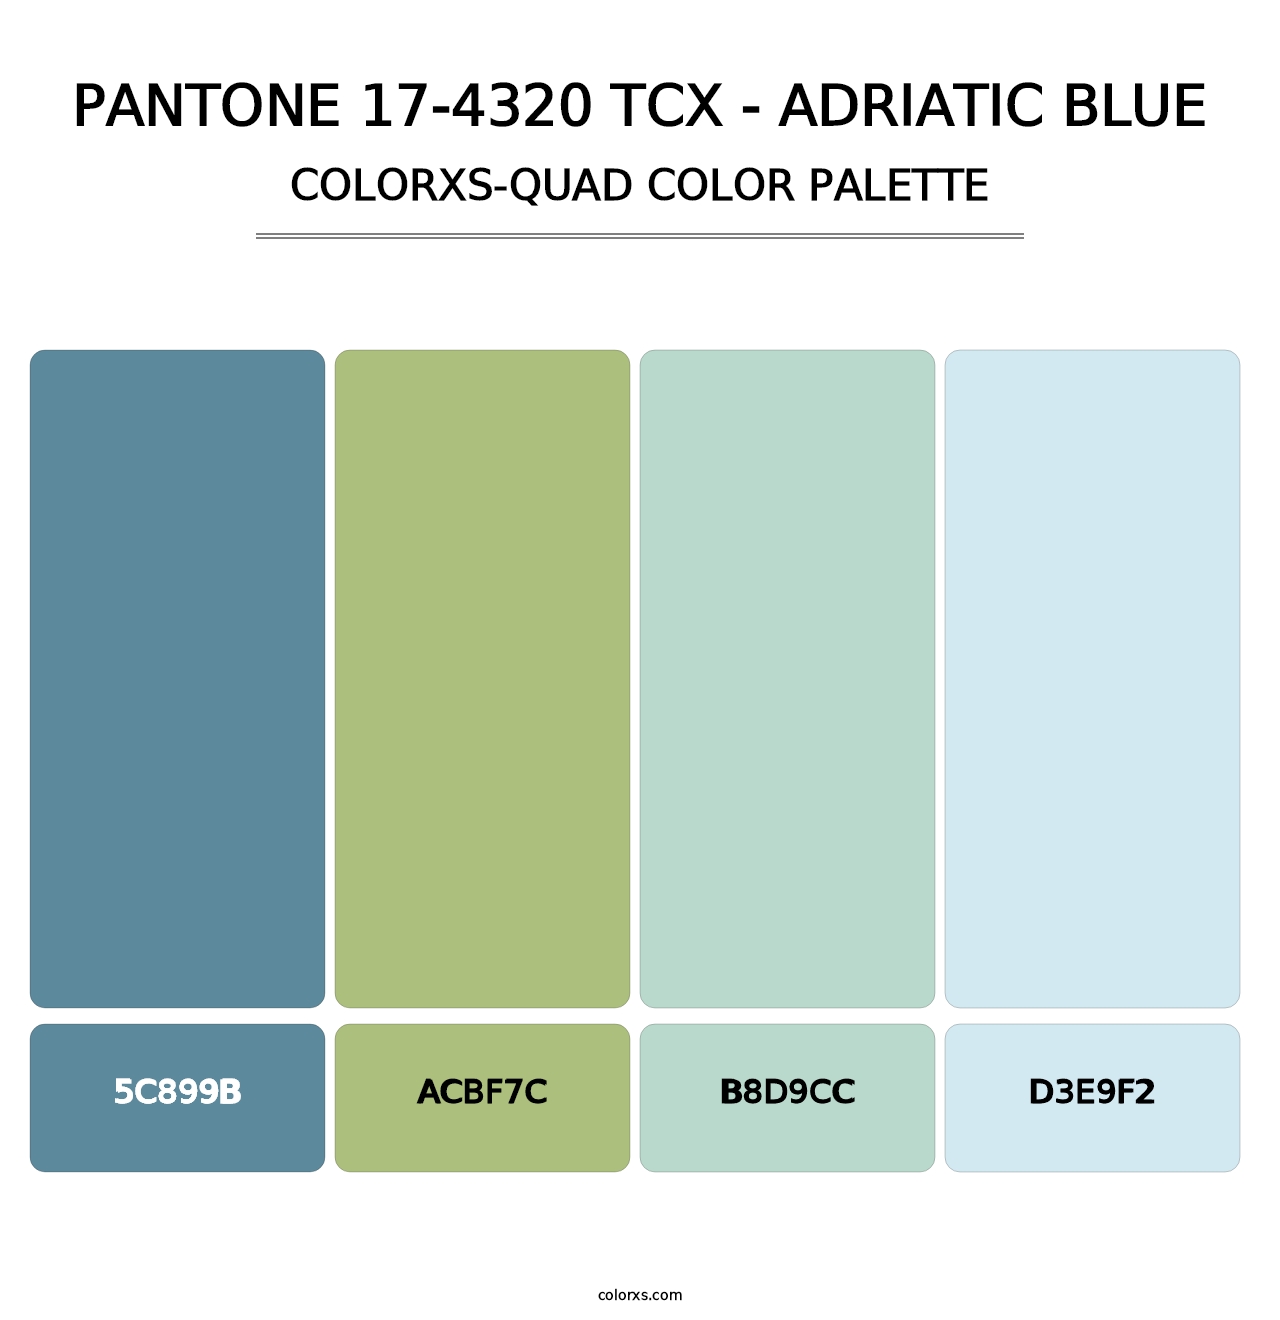 PANTONE 17-4320 TCX - Adriatic Blue - Colorxs Quad Palette